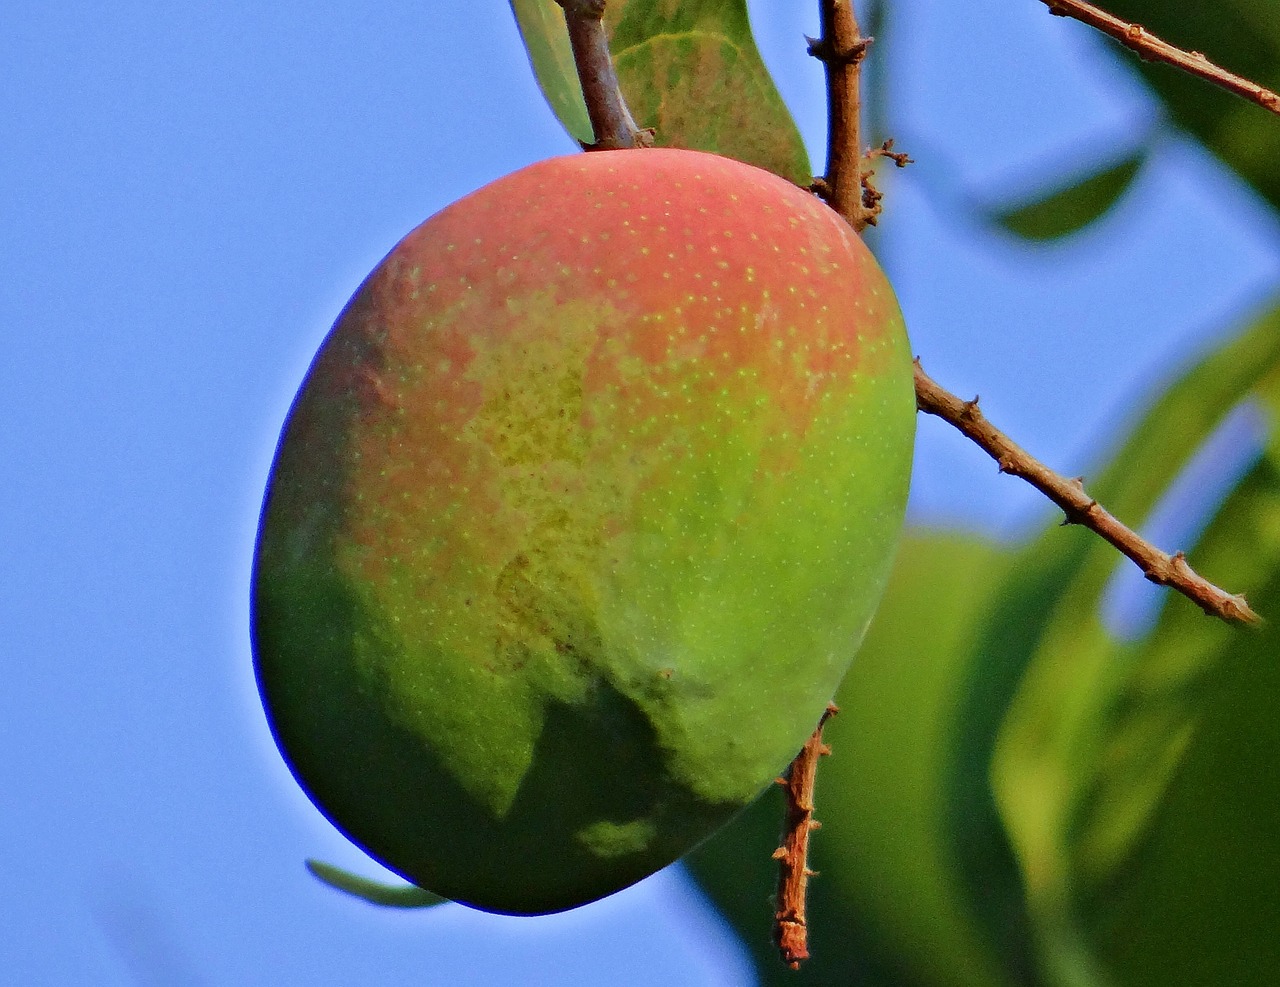 mango mangifera indica about ripe free photo